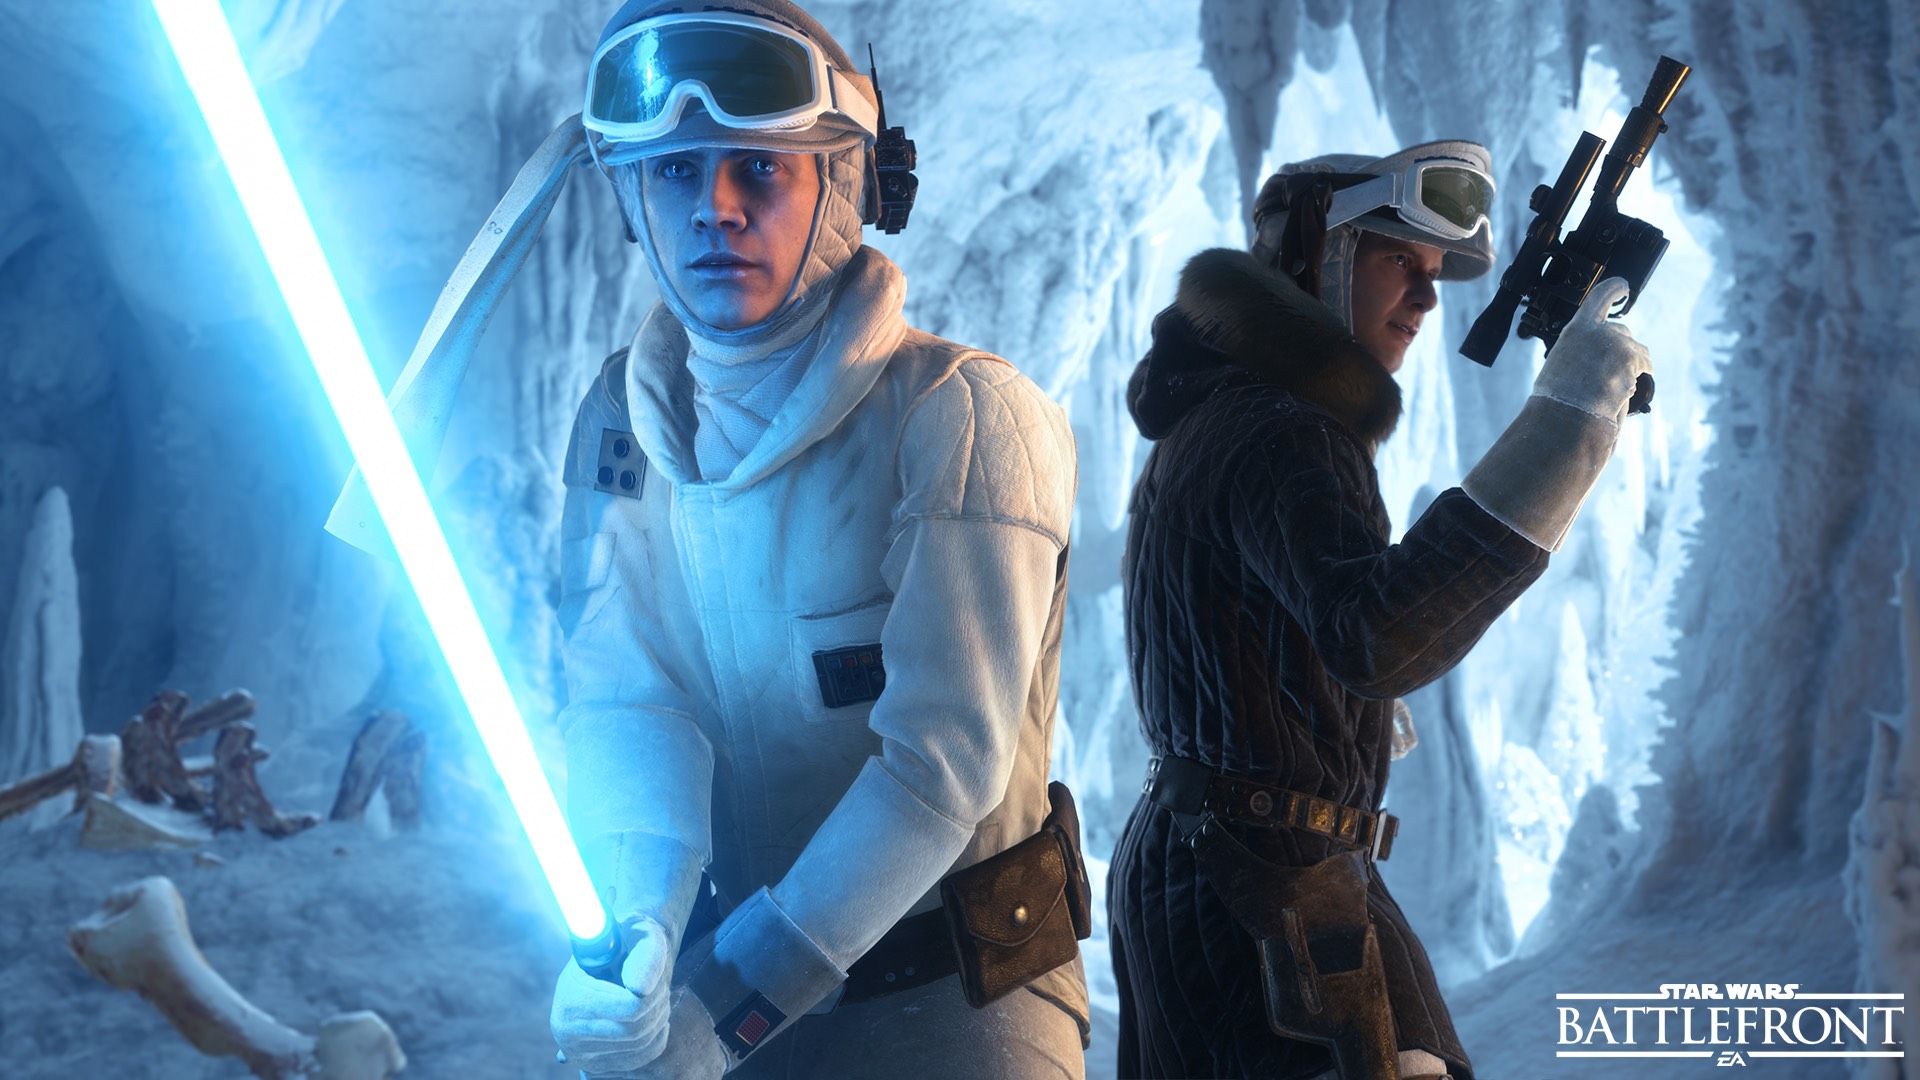 Why does Luke Skywalker use a green lightsaber in Star Wars Battlefront? Fiction & Fantasy Stack Exchange